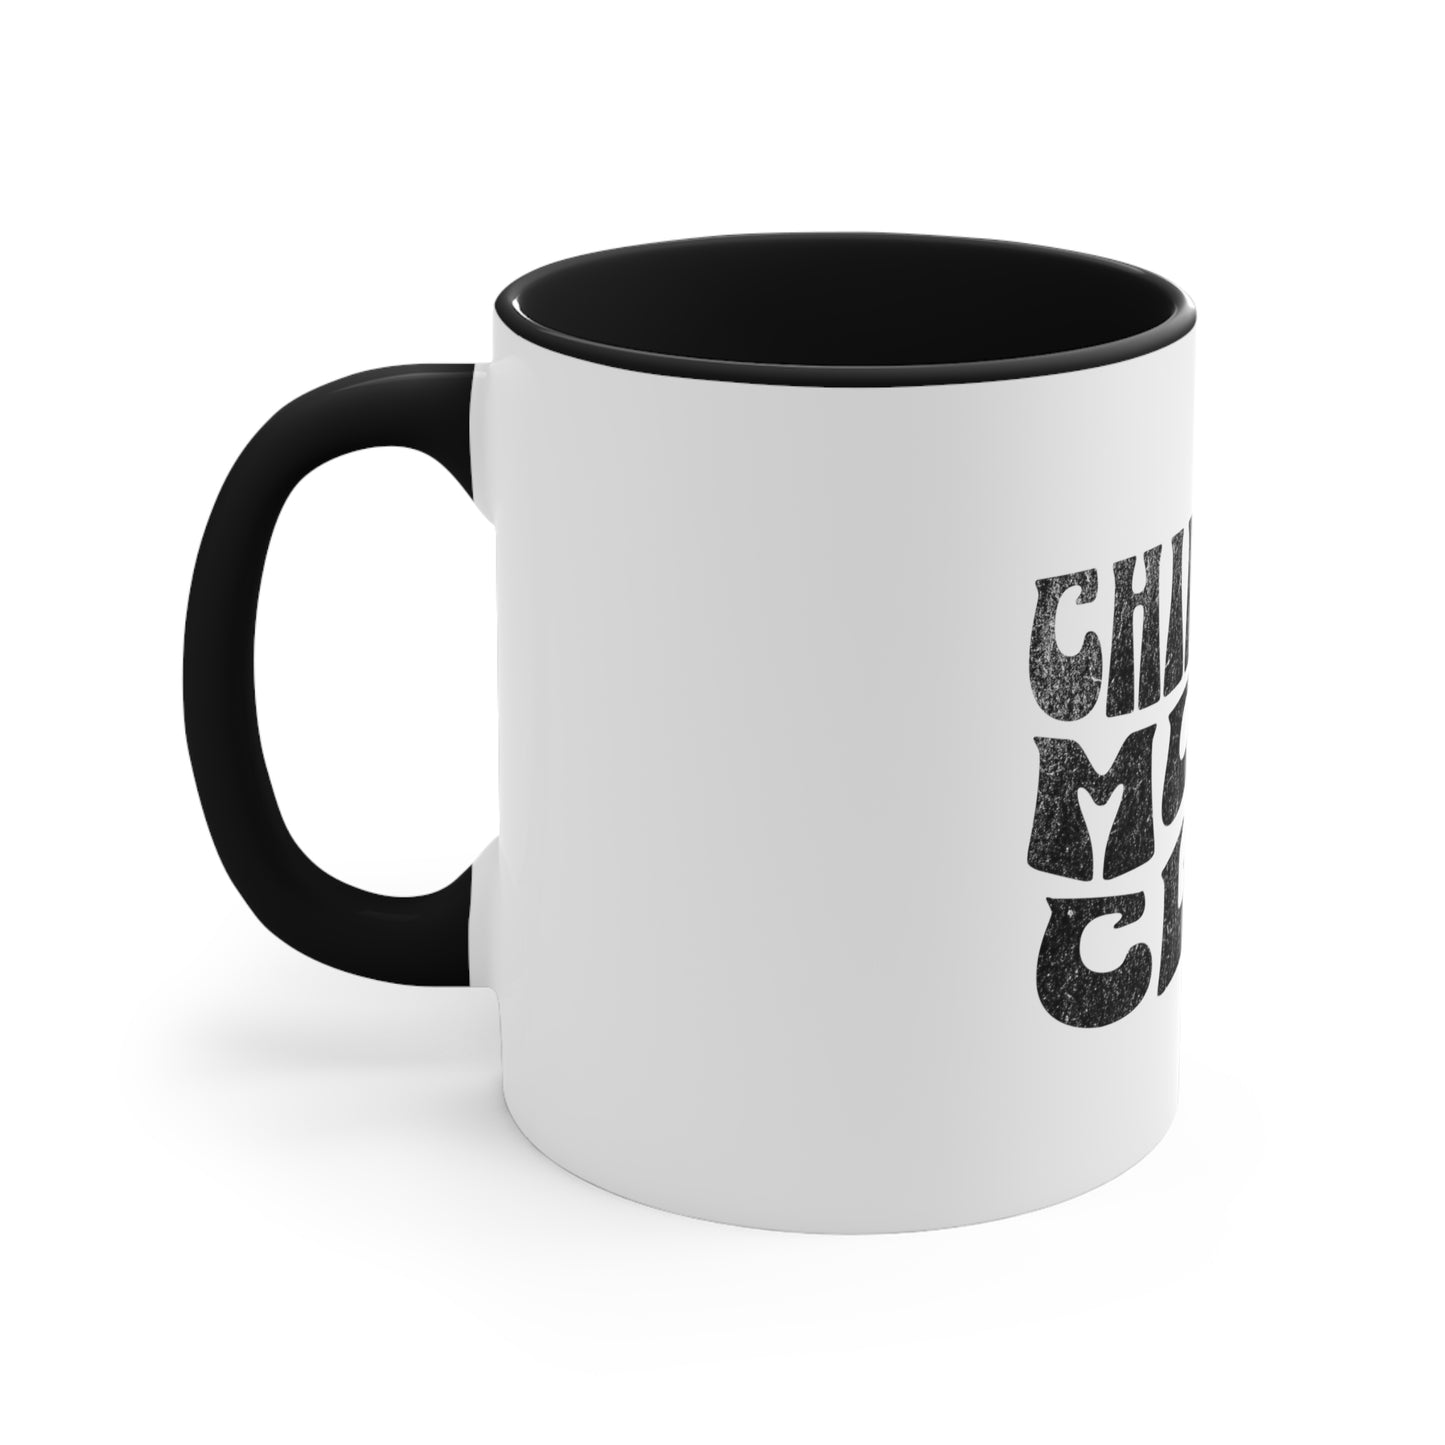 Chingona Moms Club - Accent Coffee Mug, 11oz